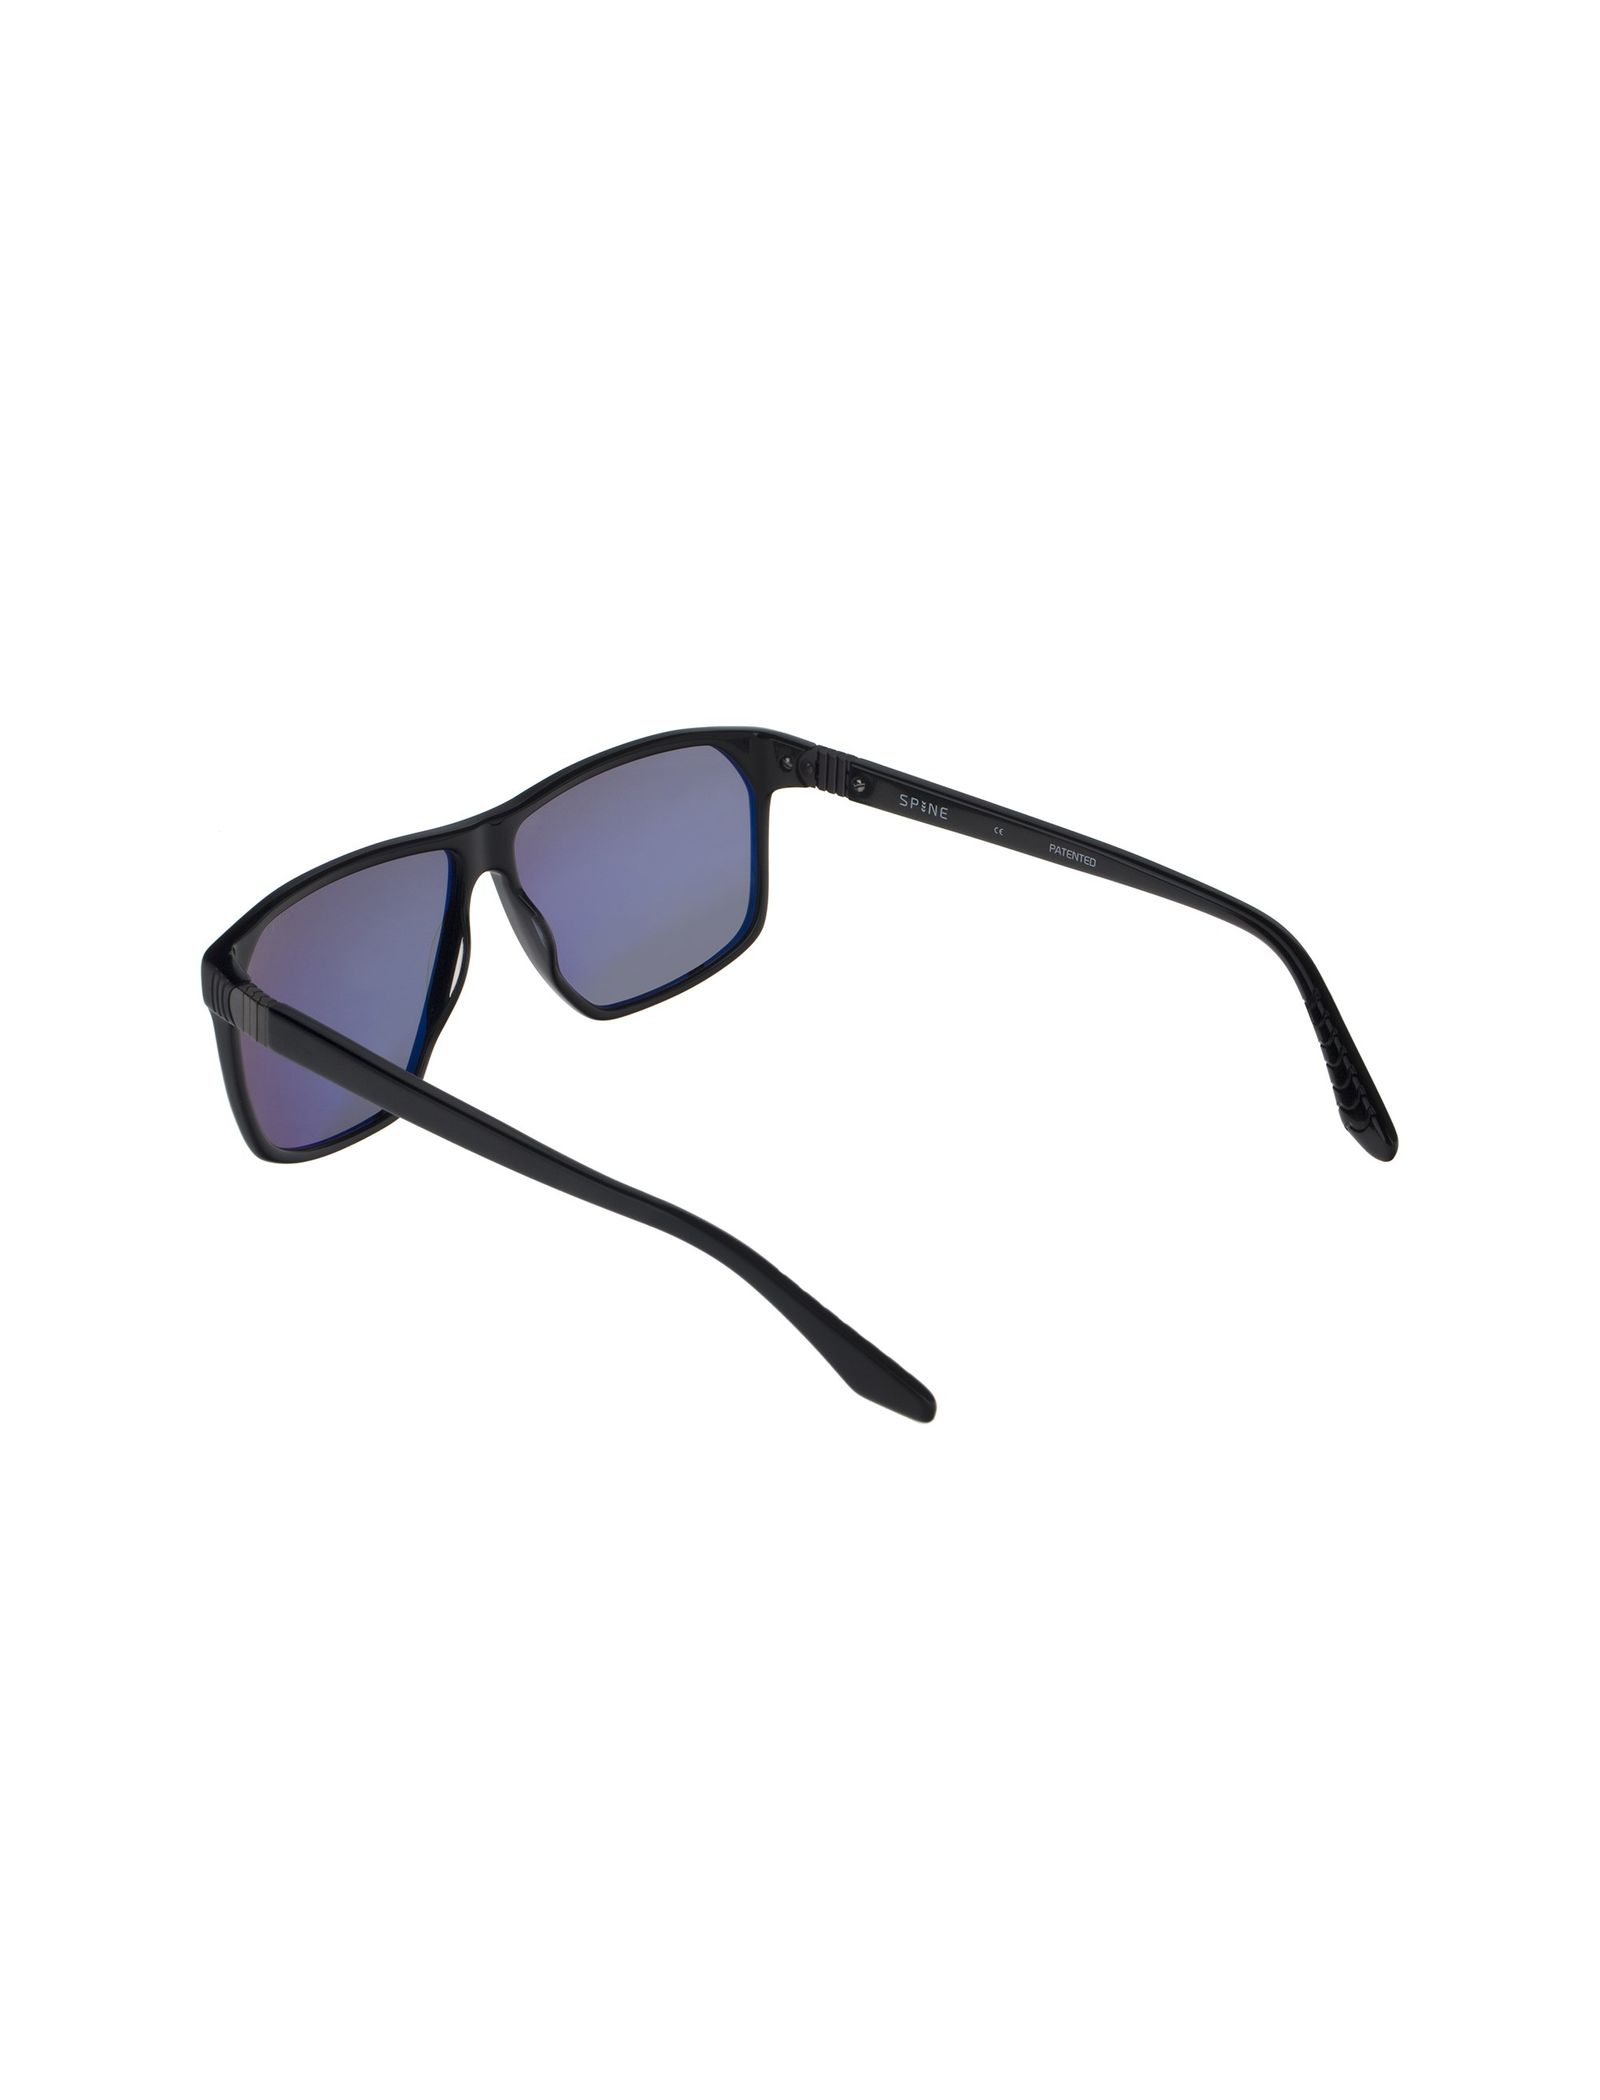 عینک آفتابی خلبانی مردانه - اسپاین - مشکي - 5